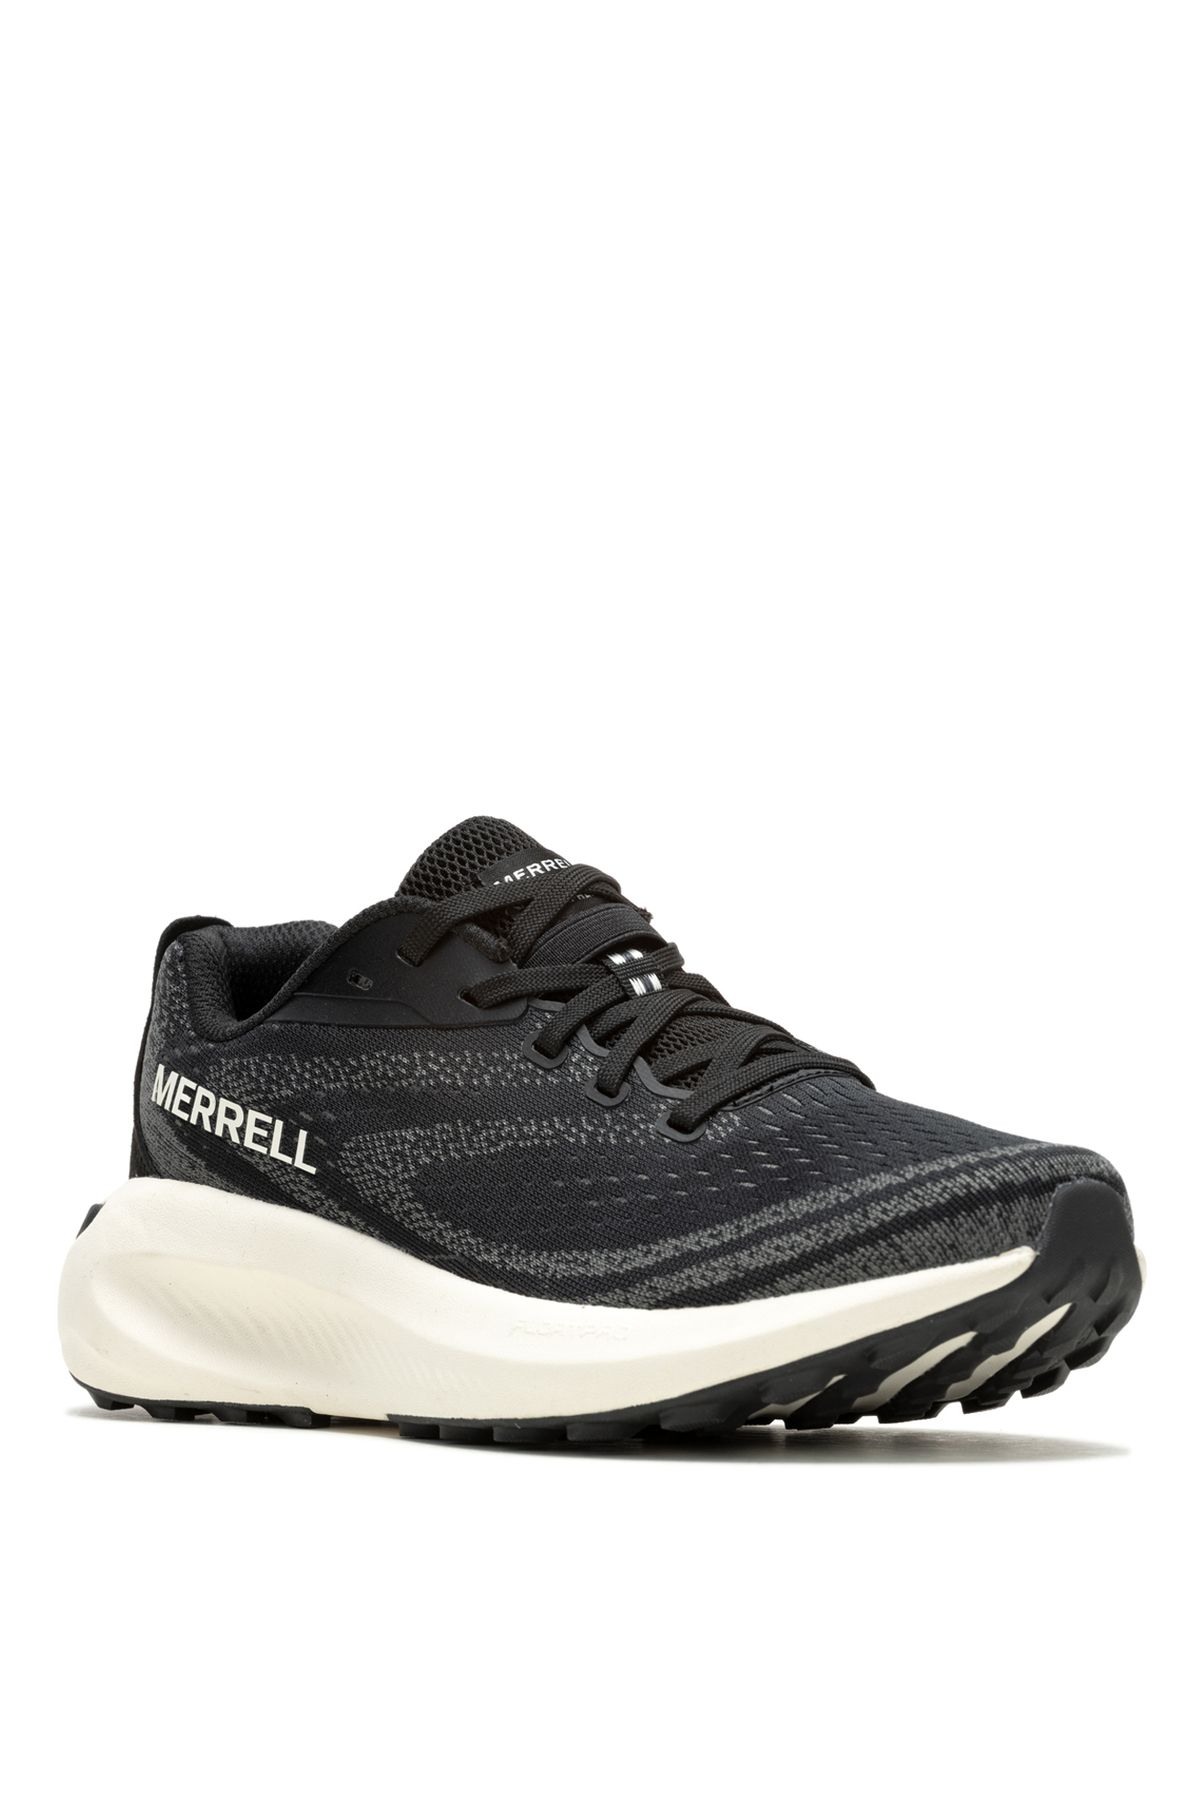 Merrell Siyah Kadın Koşu Ayakkabısı J068132_MORPHLITE